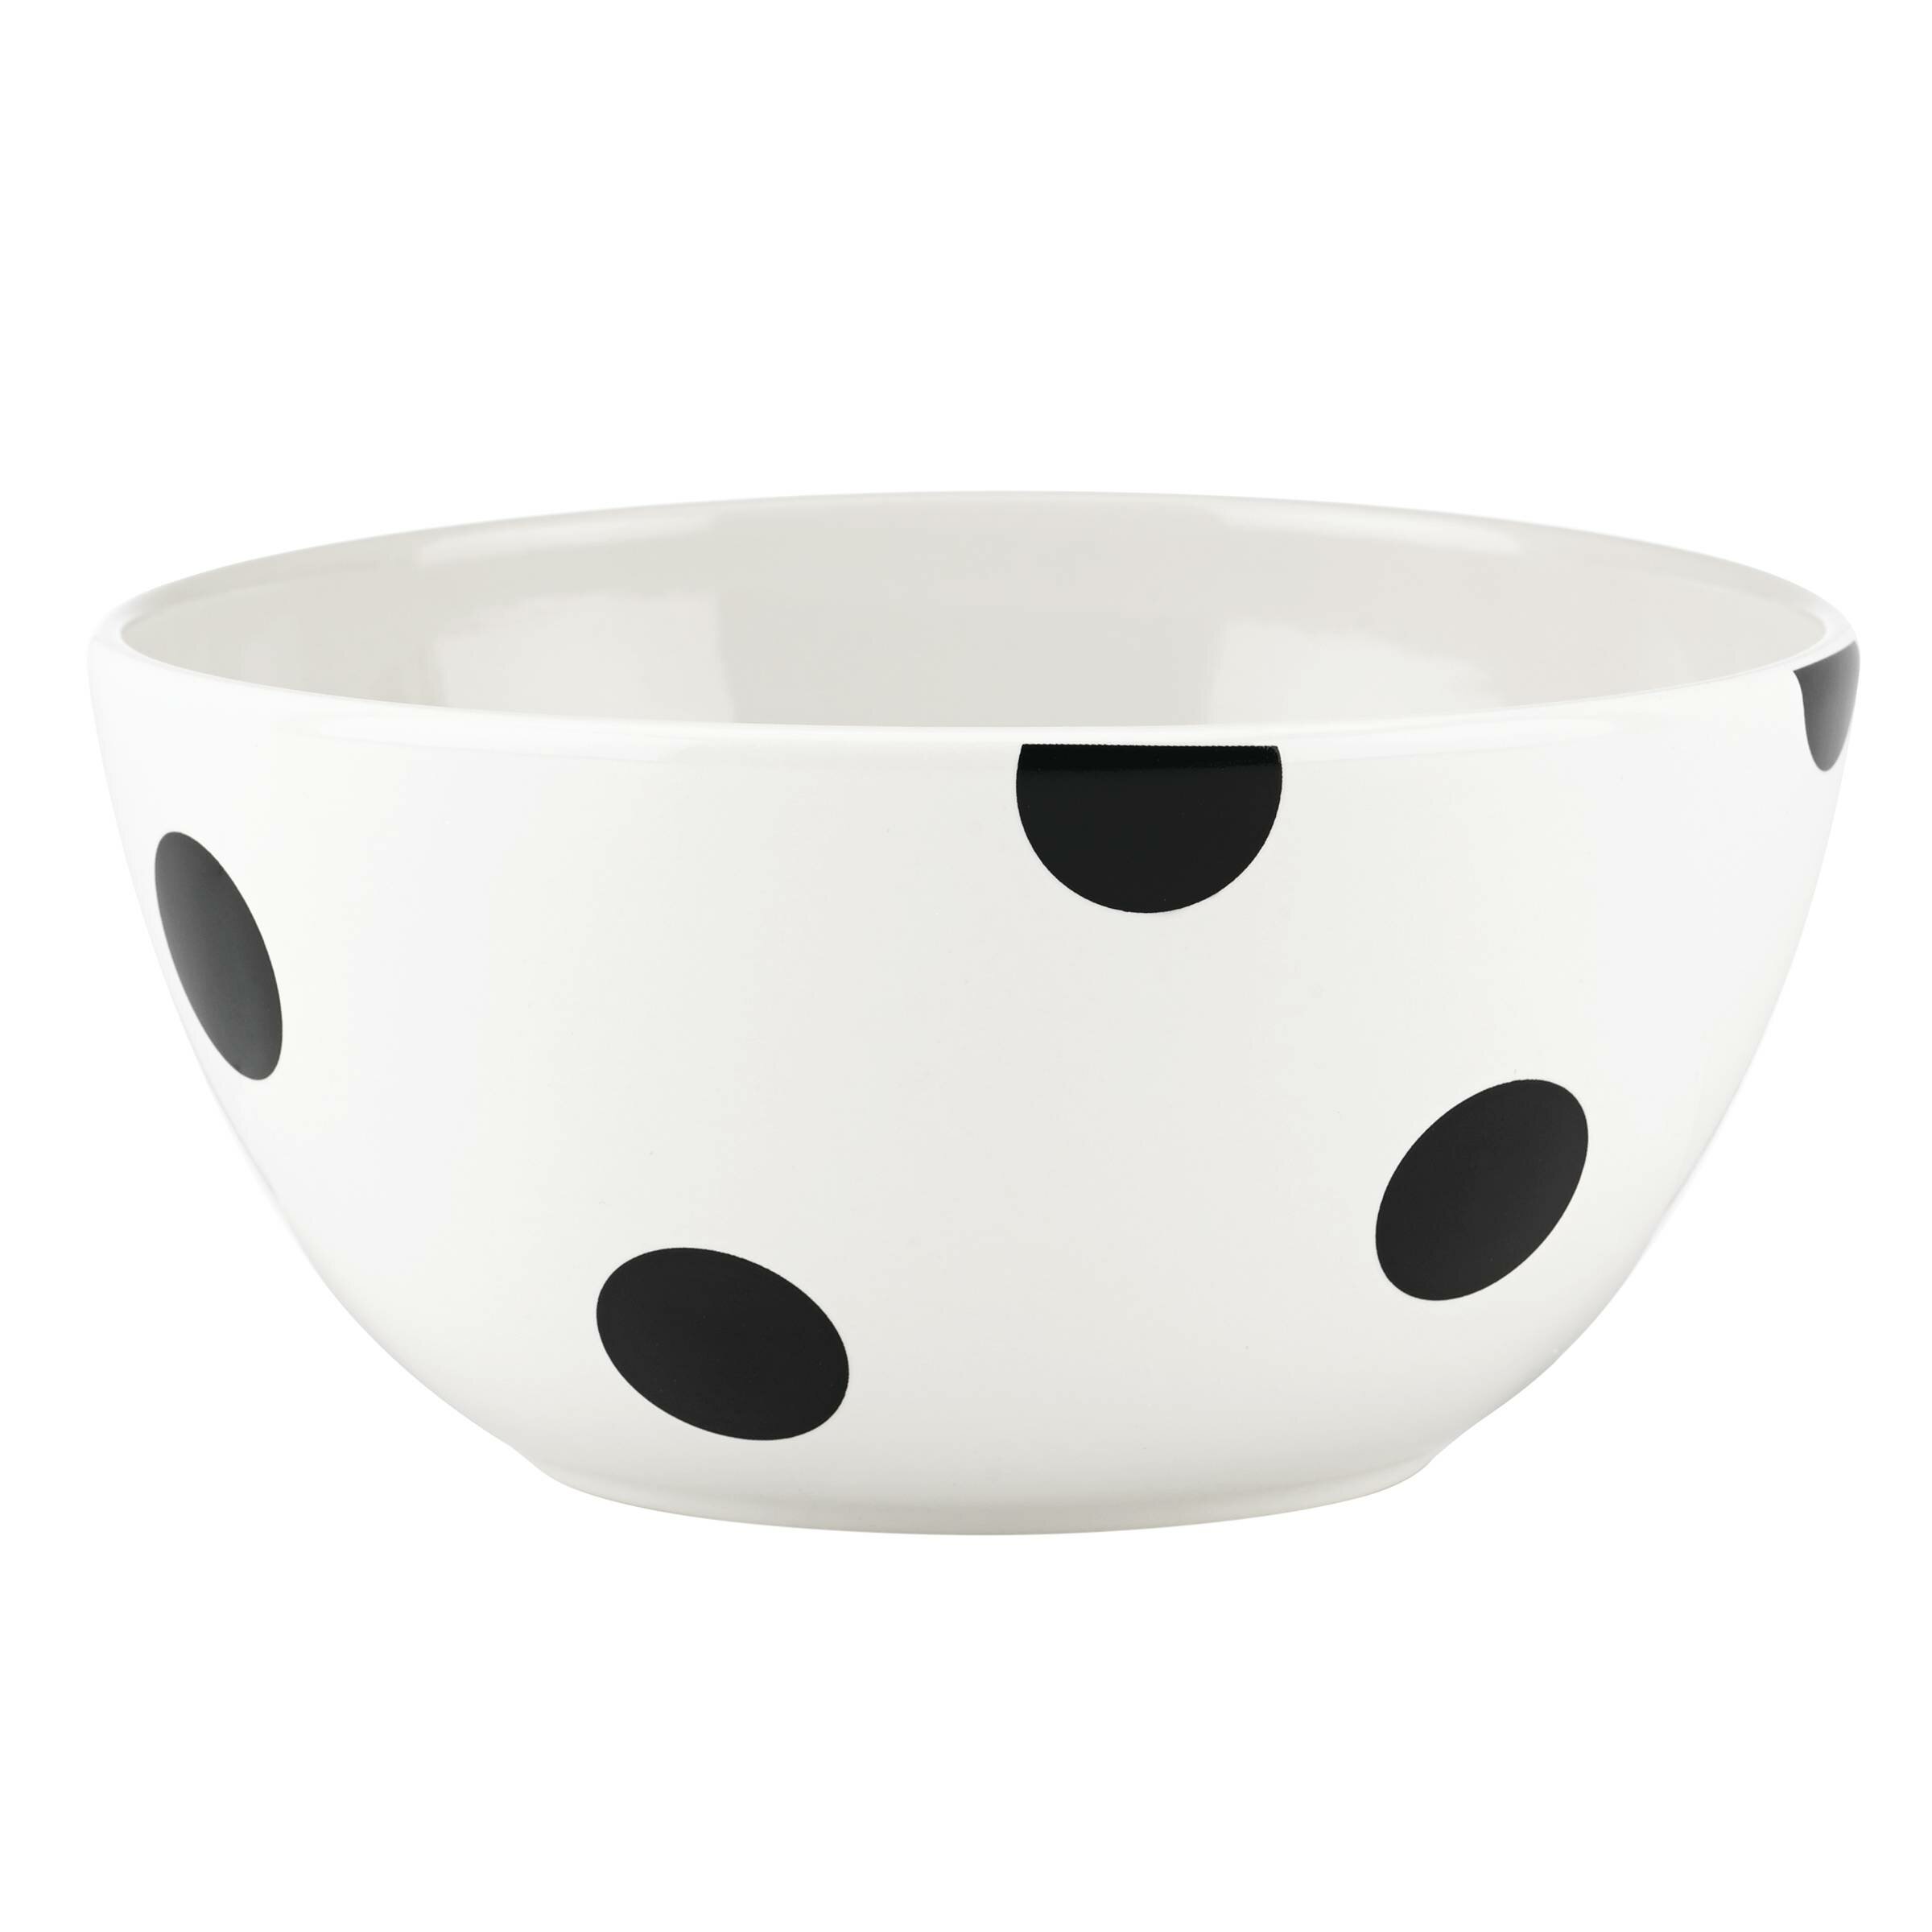 kate spade new york Deco Dot 18 oz. Cereal/Soup Bowl & Reviews | Wayfair